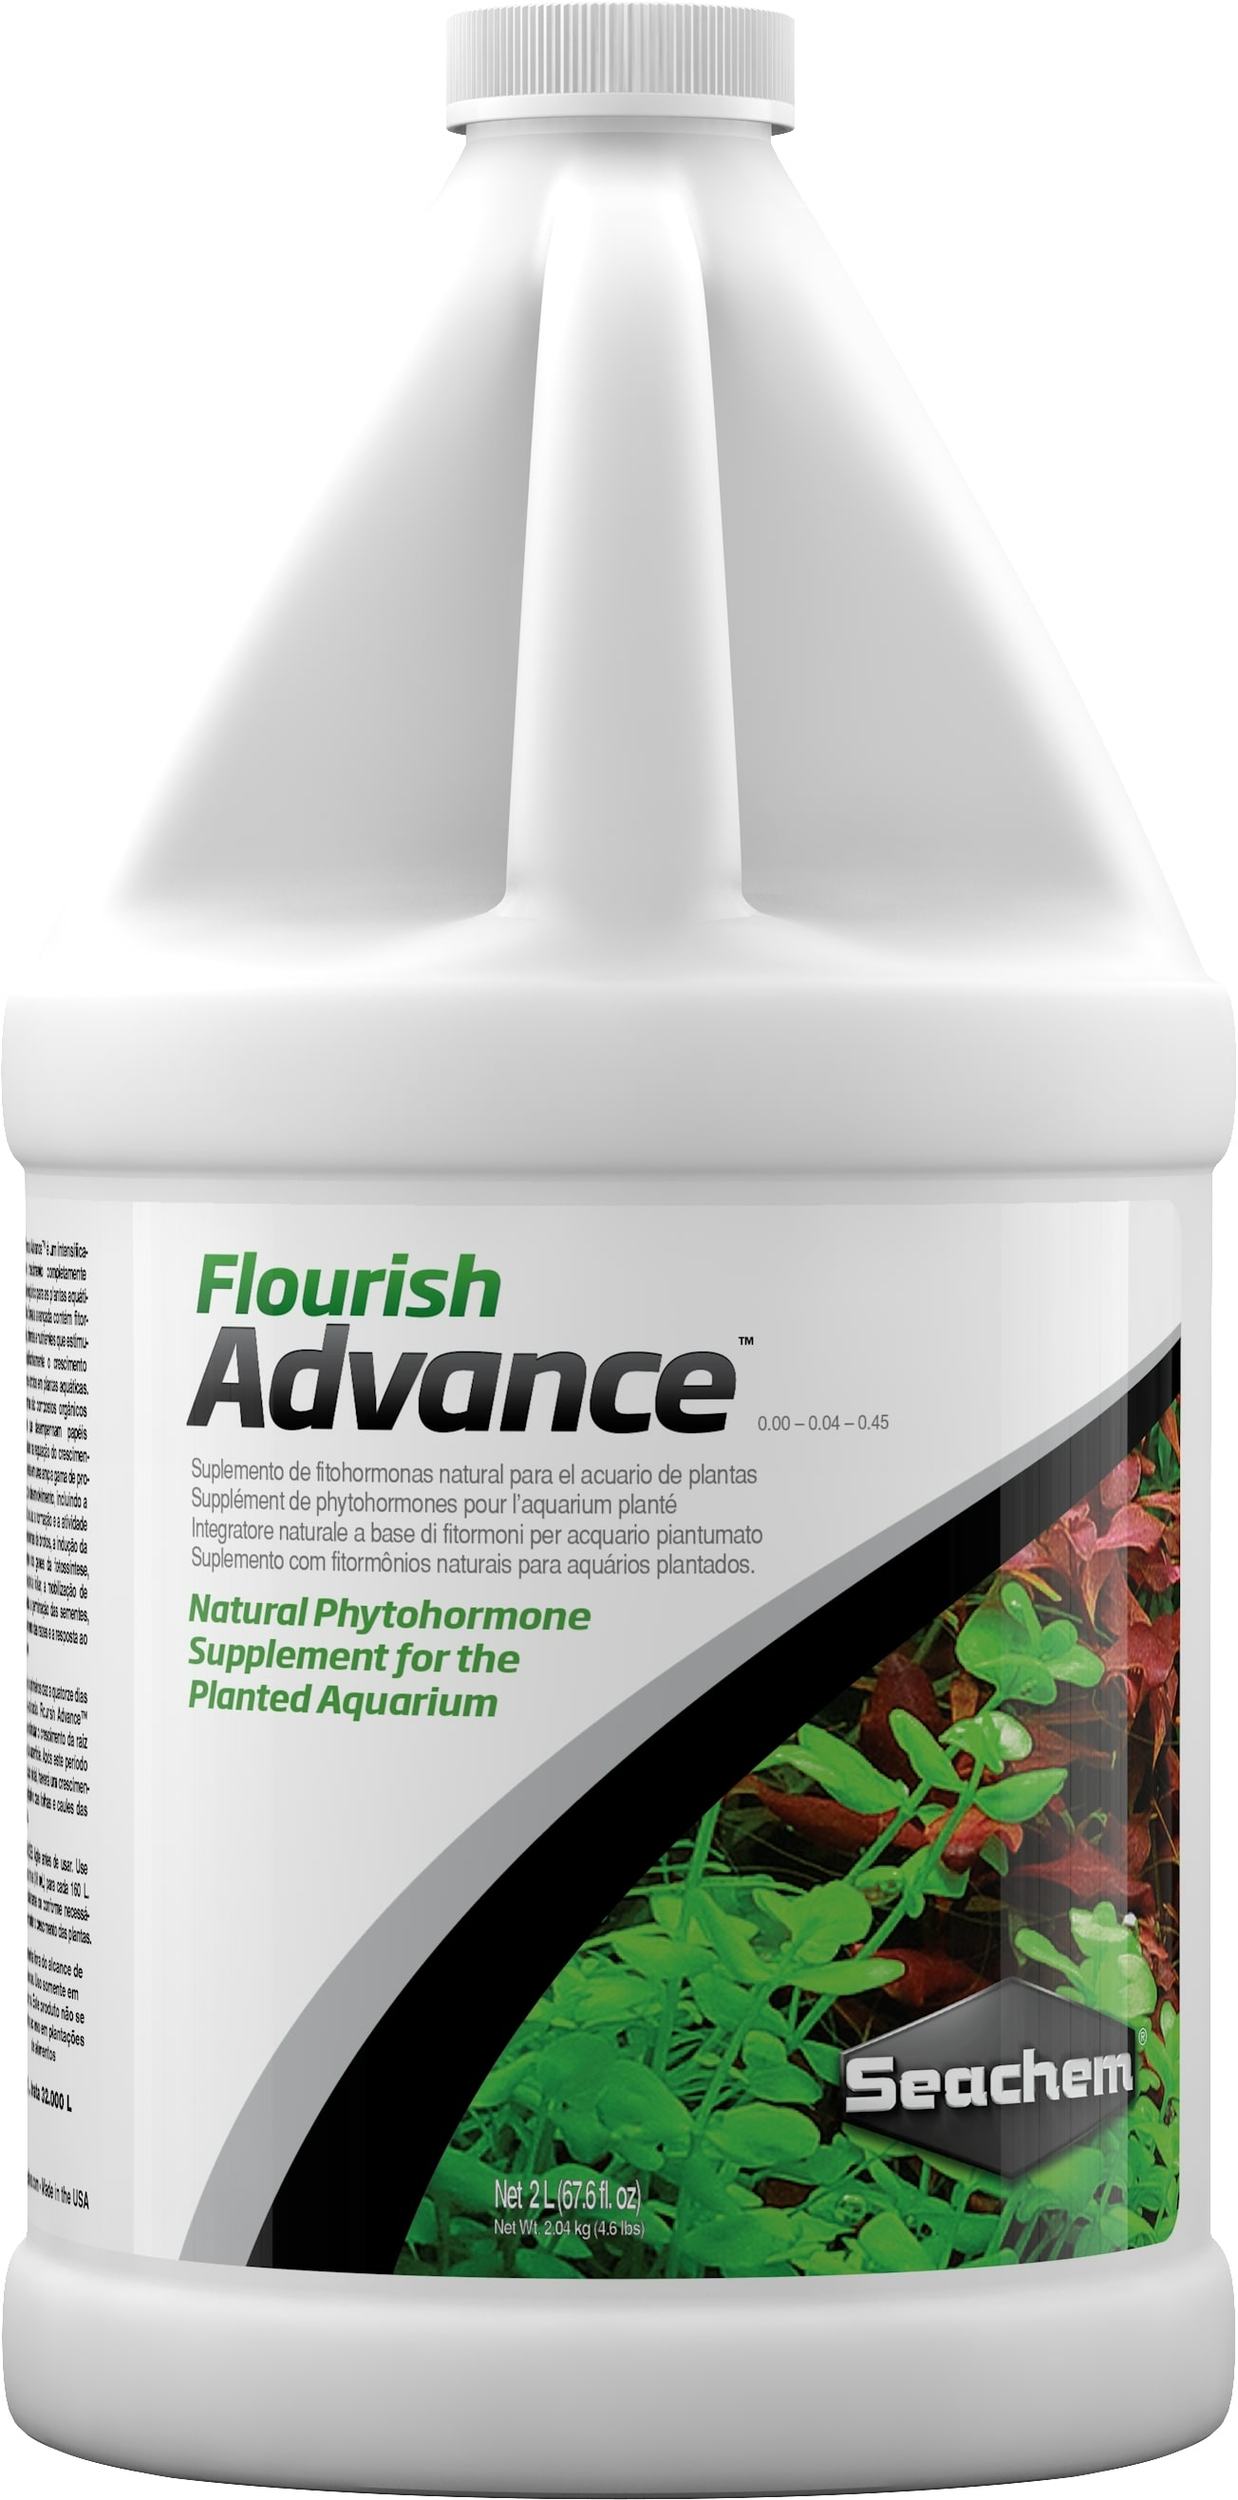 seachem-flourish-advance-2-l-supplement-de-phytohormones-naturelles-pour-booster-la-croissance-des-plantes